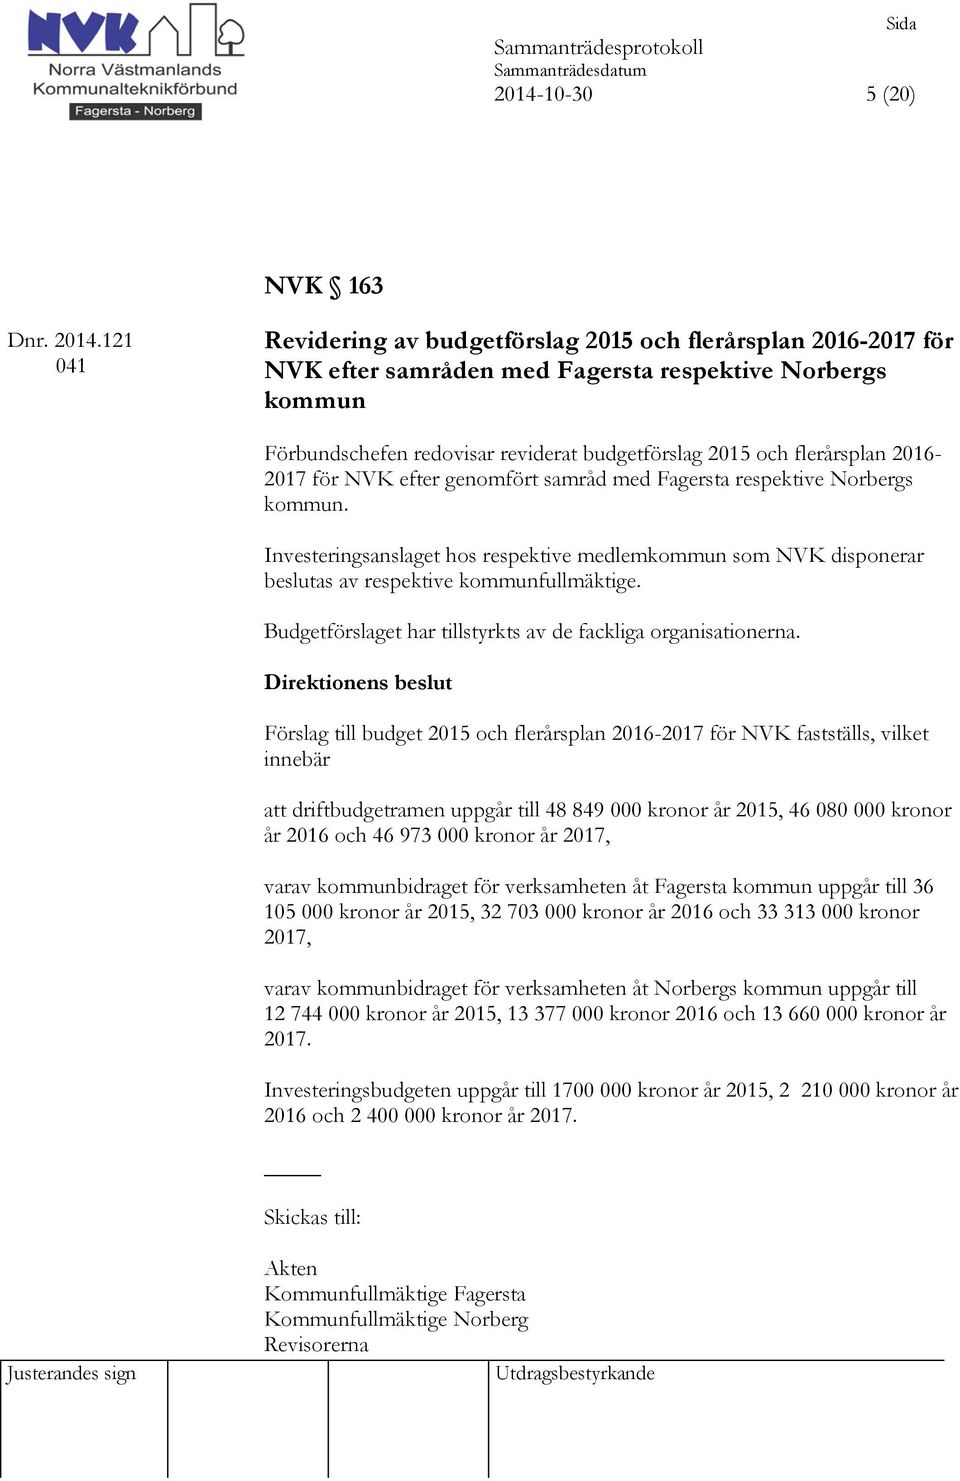 2016-2017 för NVK efter genomfört samråd med Fagersta respektive Norbergs kommun. Investeringsanslaget hos respektive medlemkommun som NVK disponerar beslutas av respektive kommunfullmäktige.